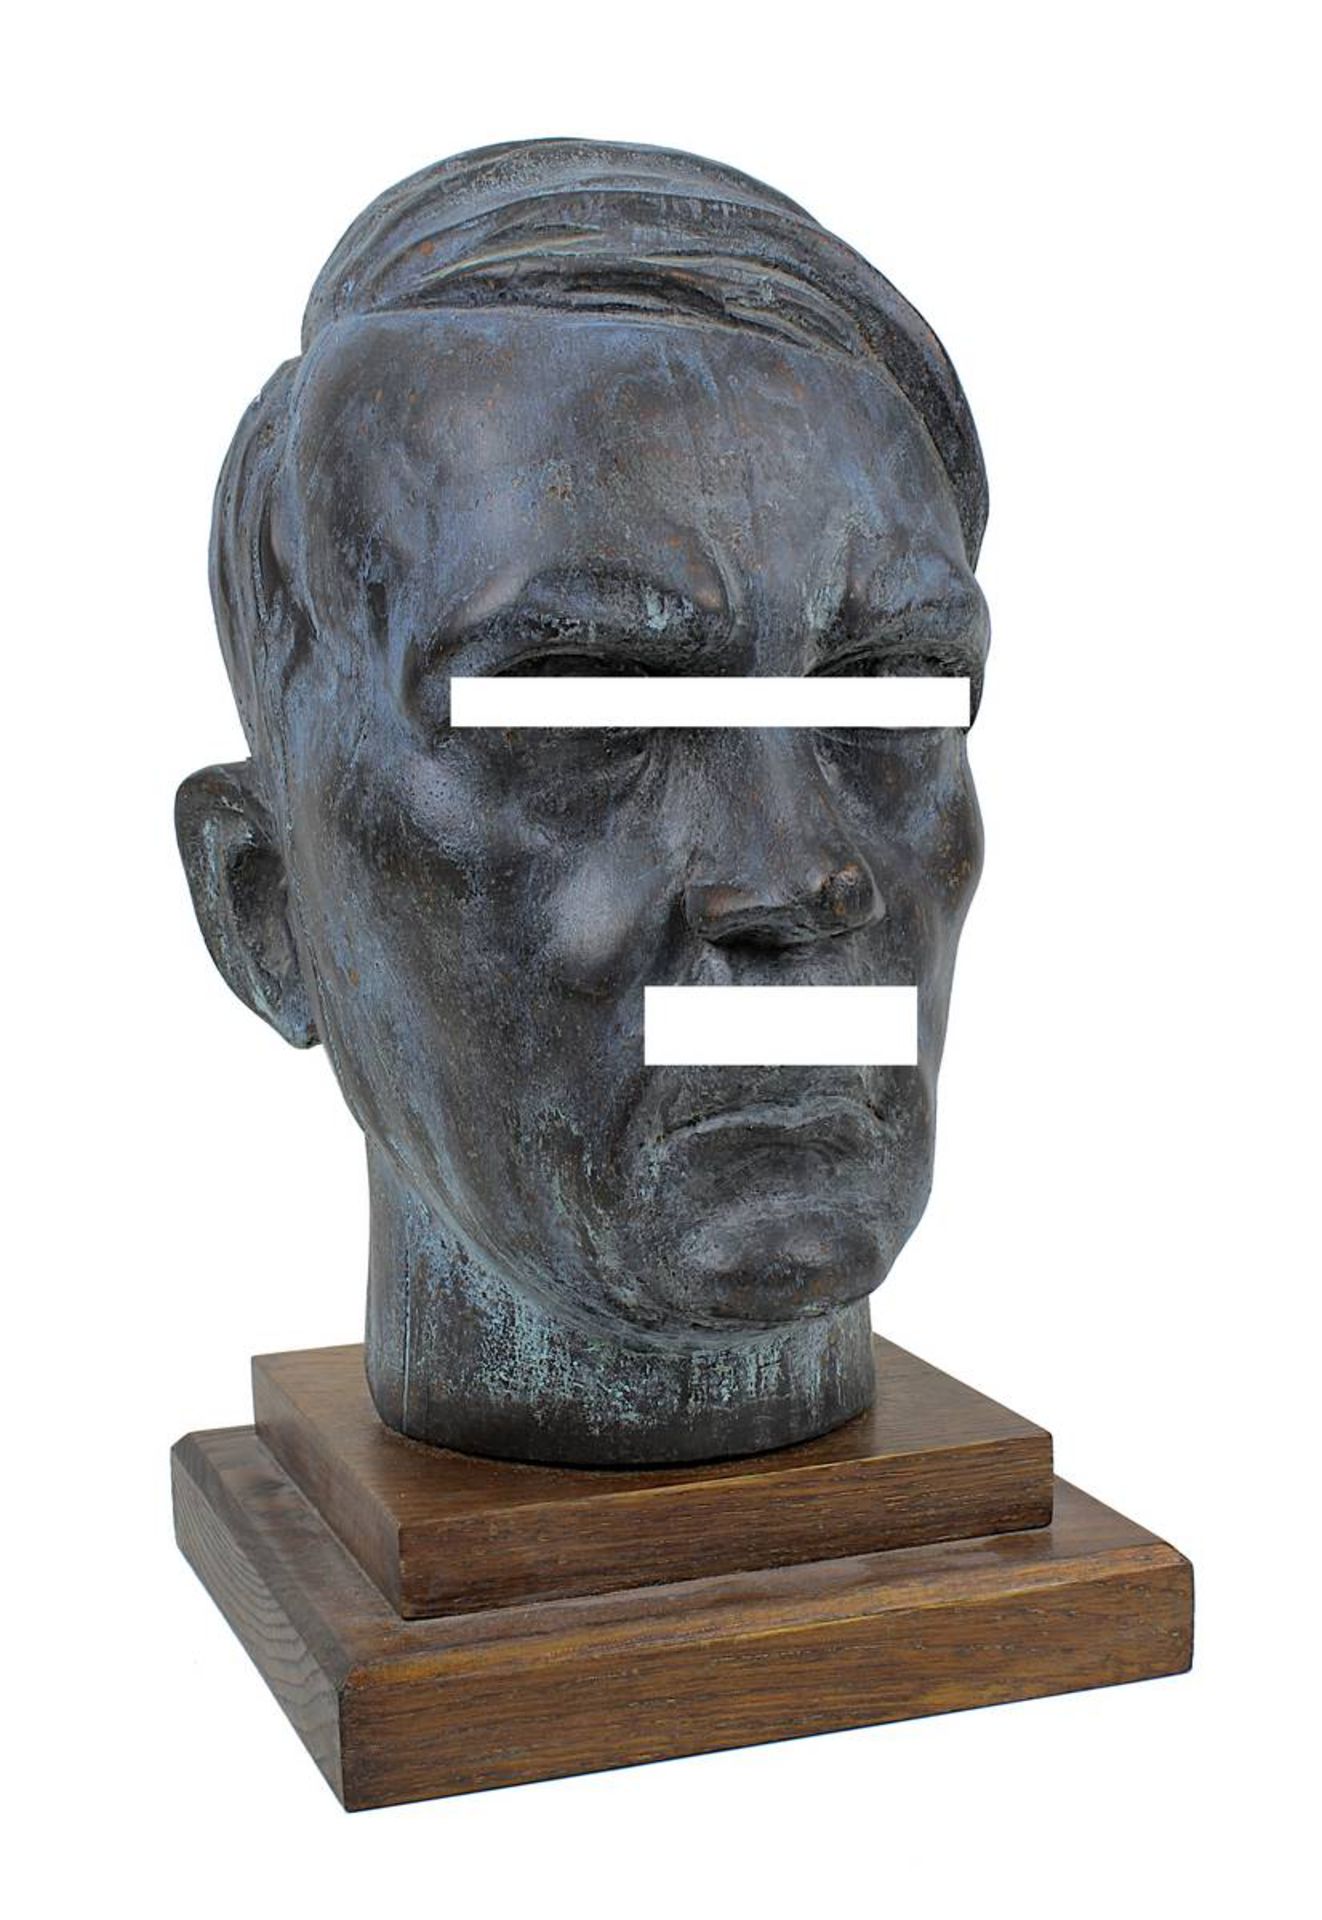 Holzbüste Adolf Hitlers, Deutsches Reich 1933-45, vollplastischer Kopf aus einem Stück Holz